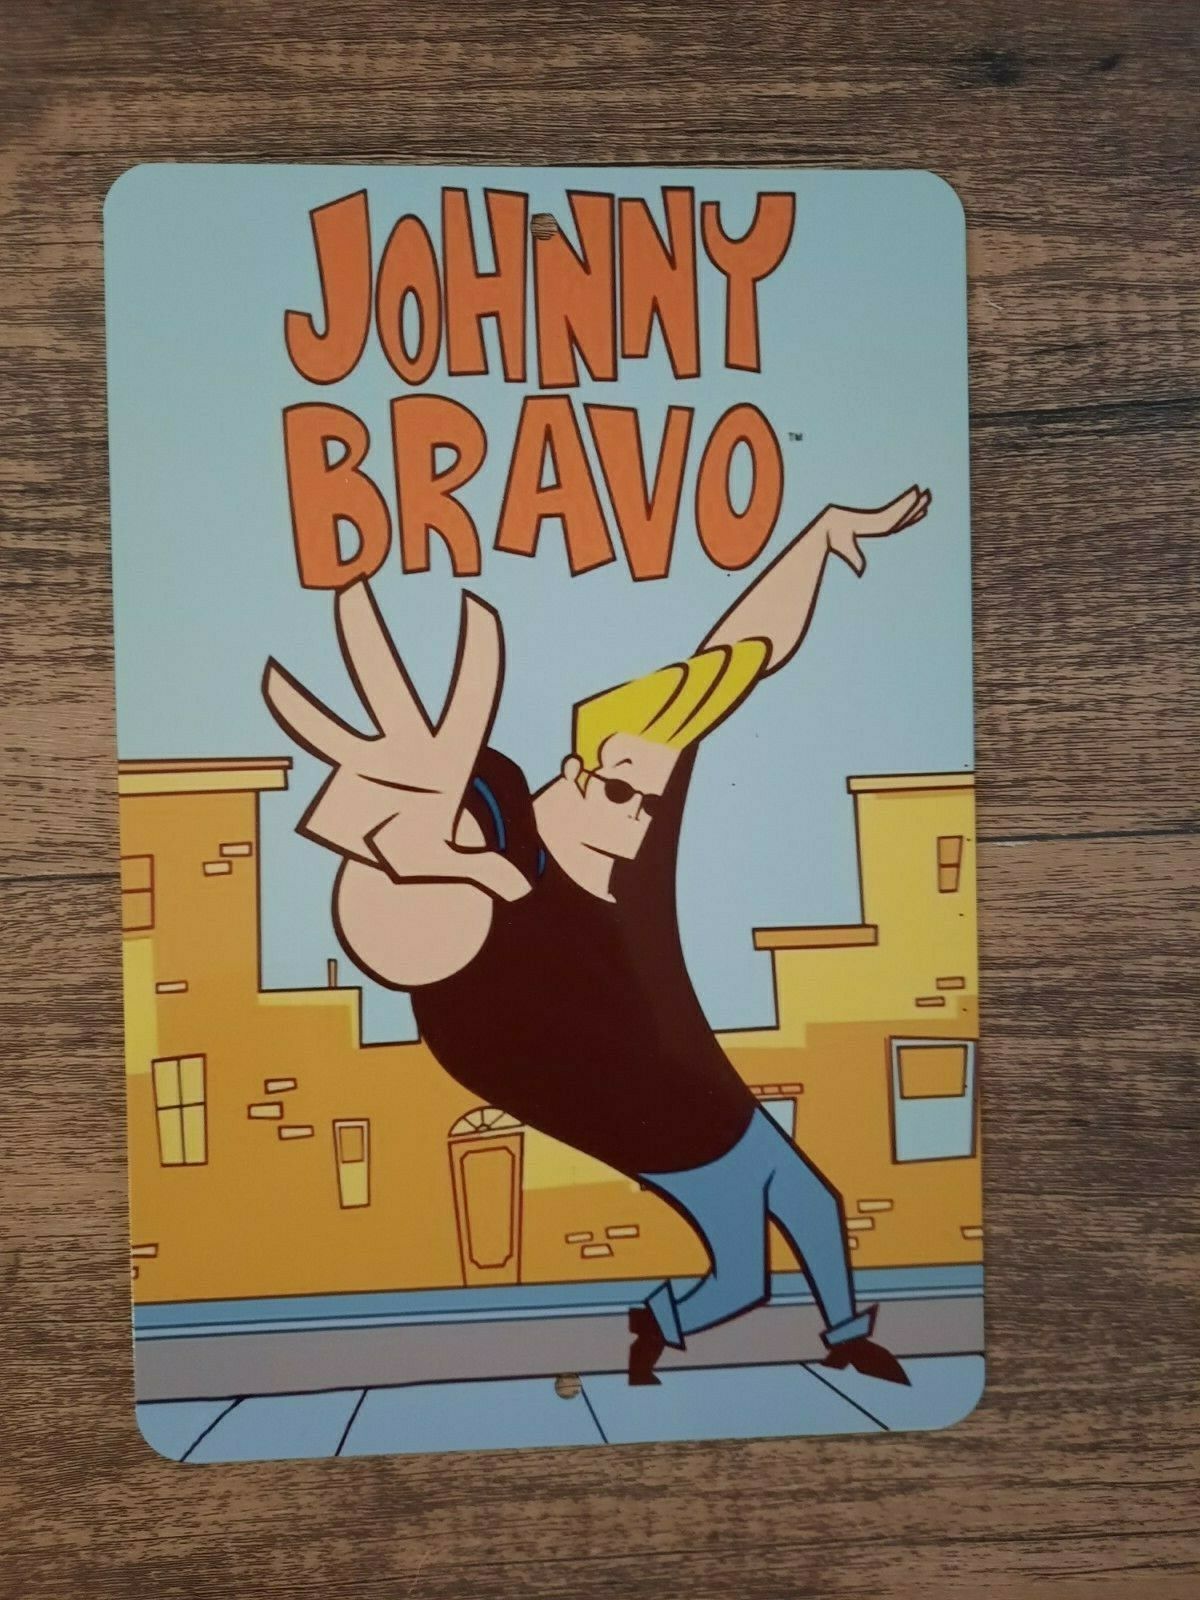 Johnny Bravo Classic Cartoon 8x12 Metal Wall Sign Hanna Barbera